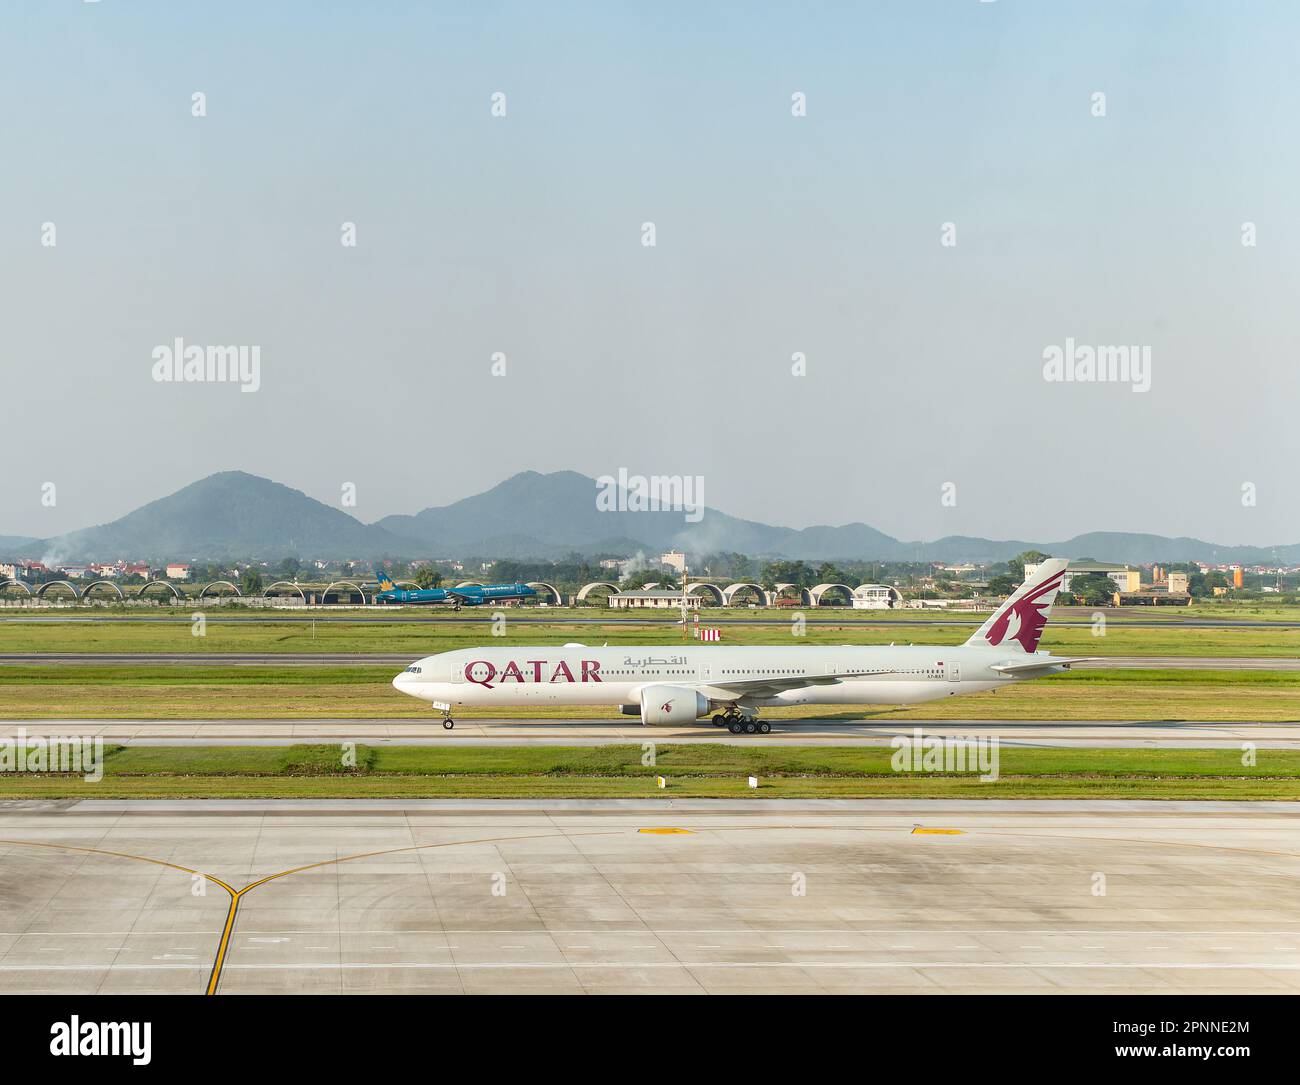 Qatar Airway Boeing 777-300 Taxifahren am Noi Bai International Airport (NIA), dem Hauptflughafen von Hanoi, der Hauptstadt von Vietnam. Vietnam Airlines Airbus Stockfoto